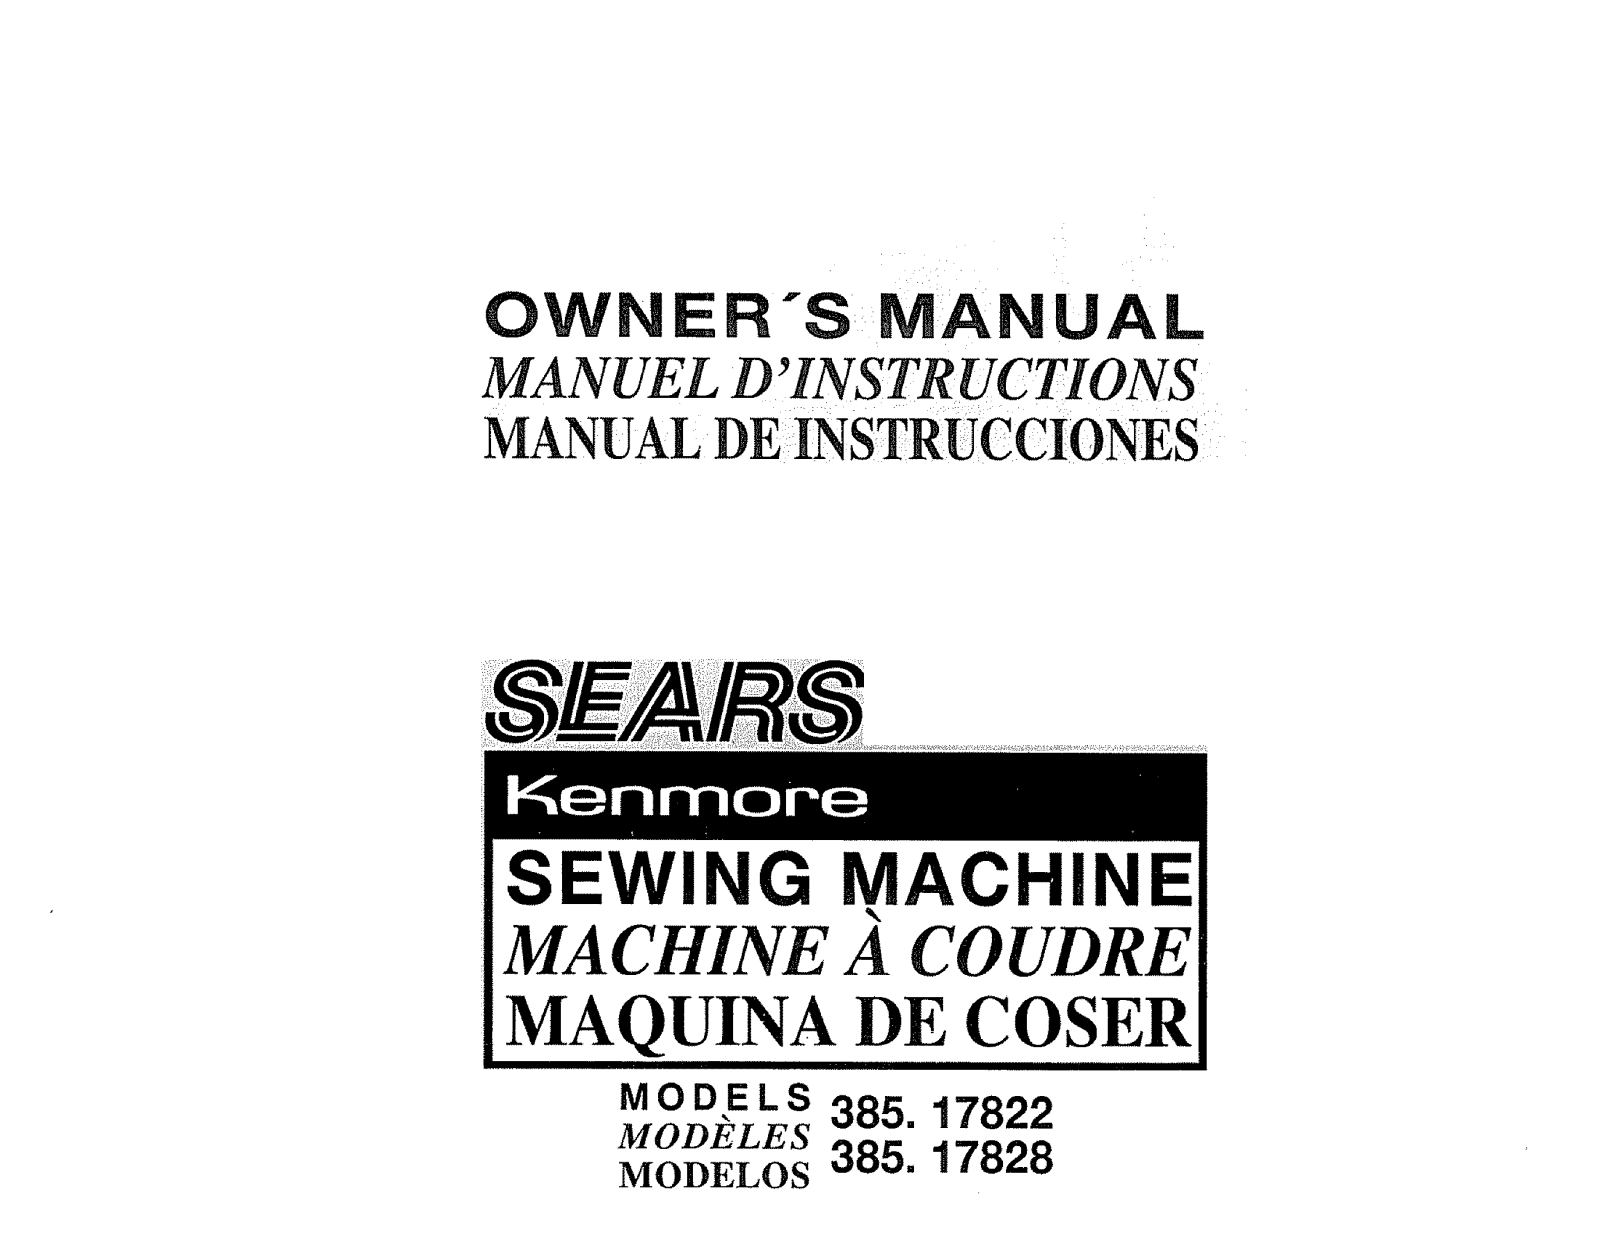 Kenmore 38517828490, 38517822490 Owner’s Manual